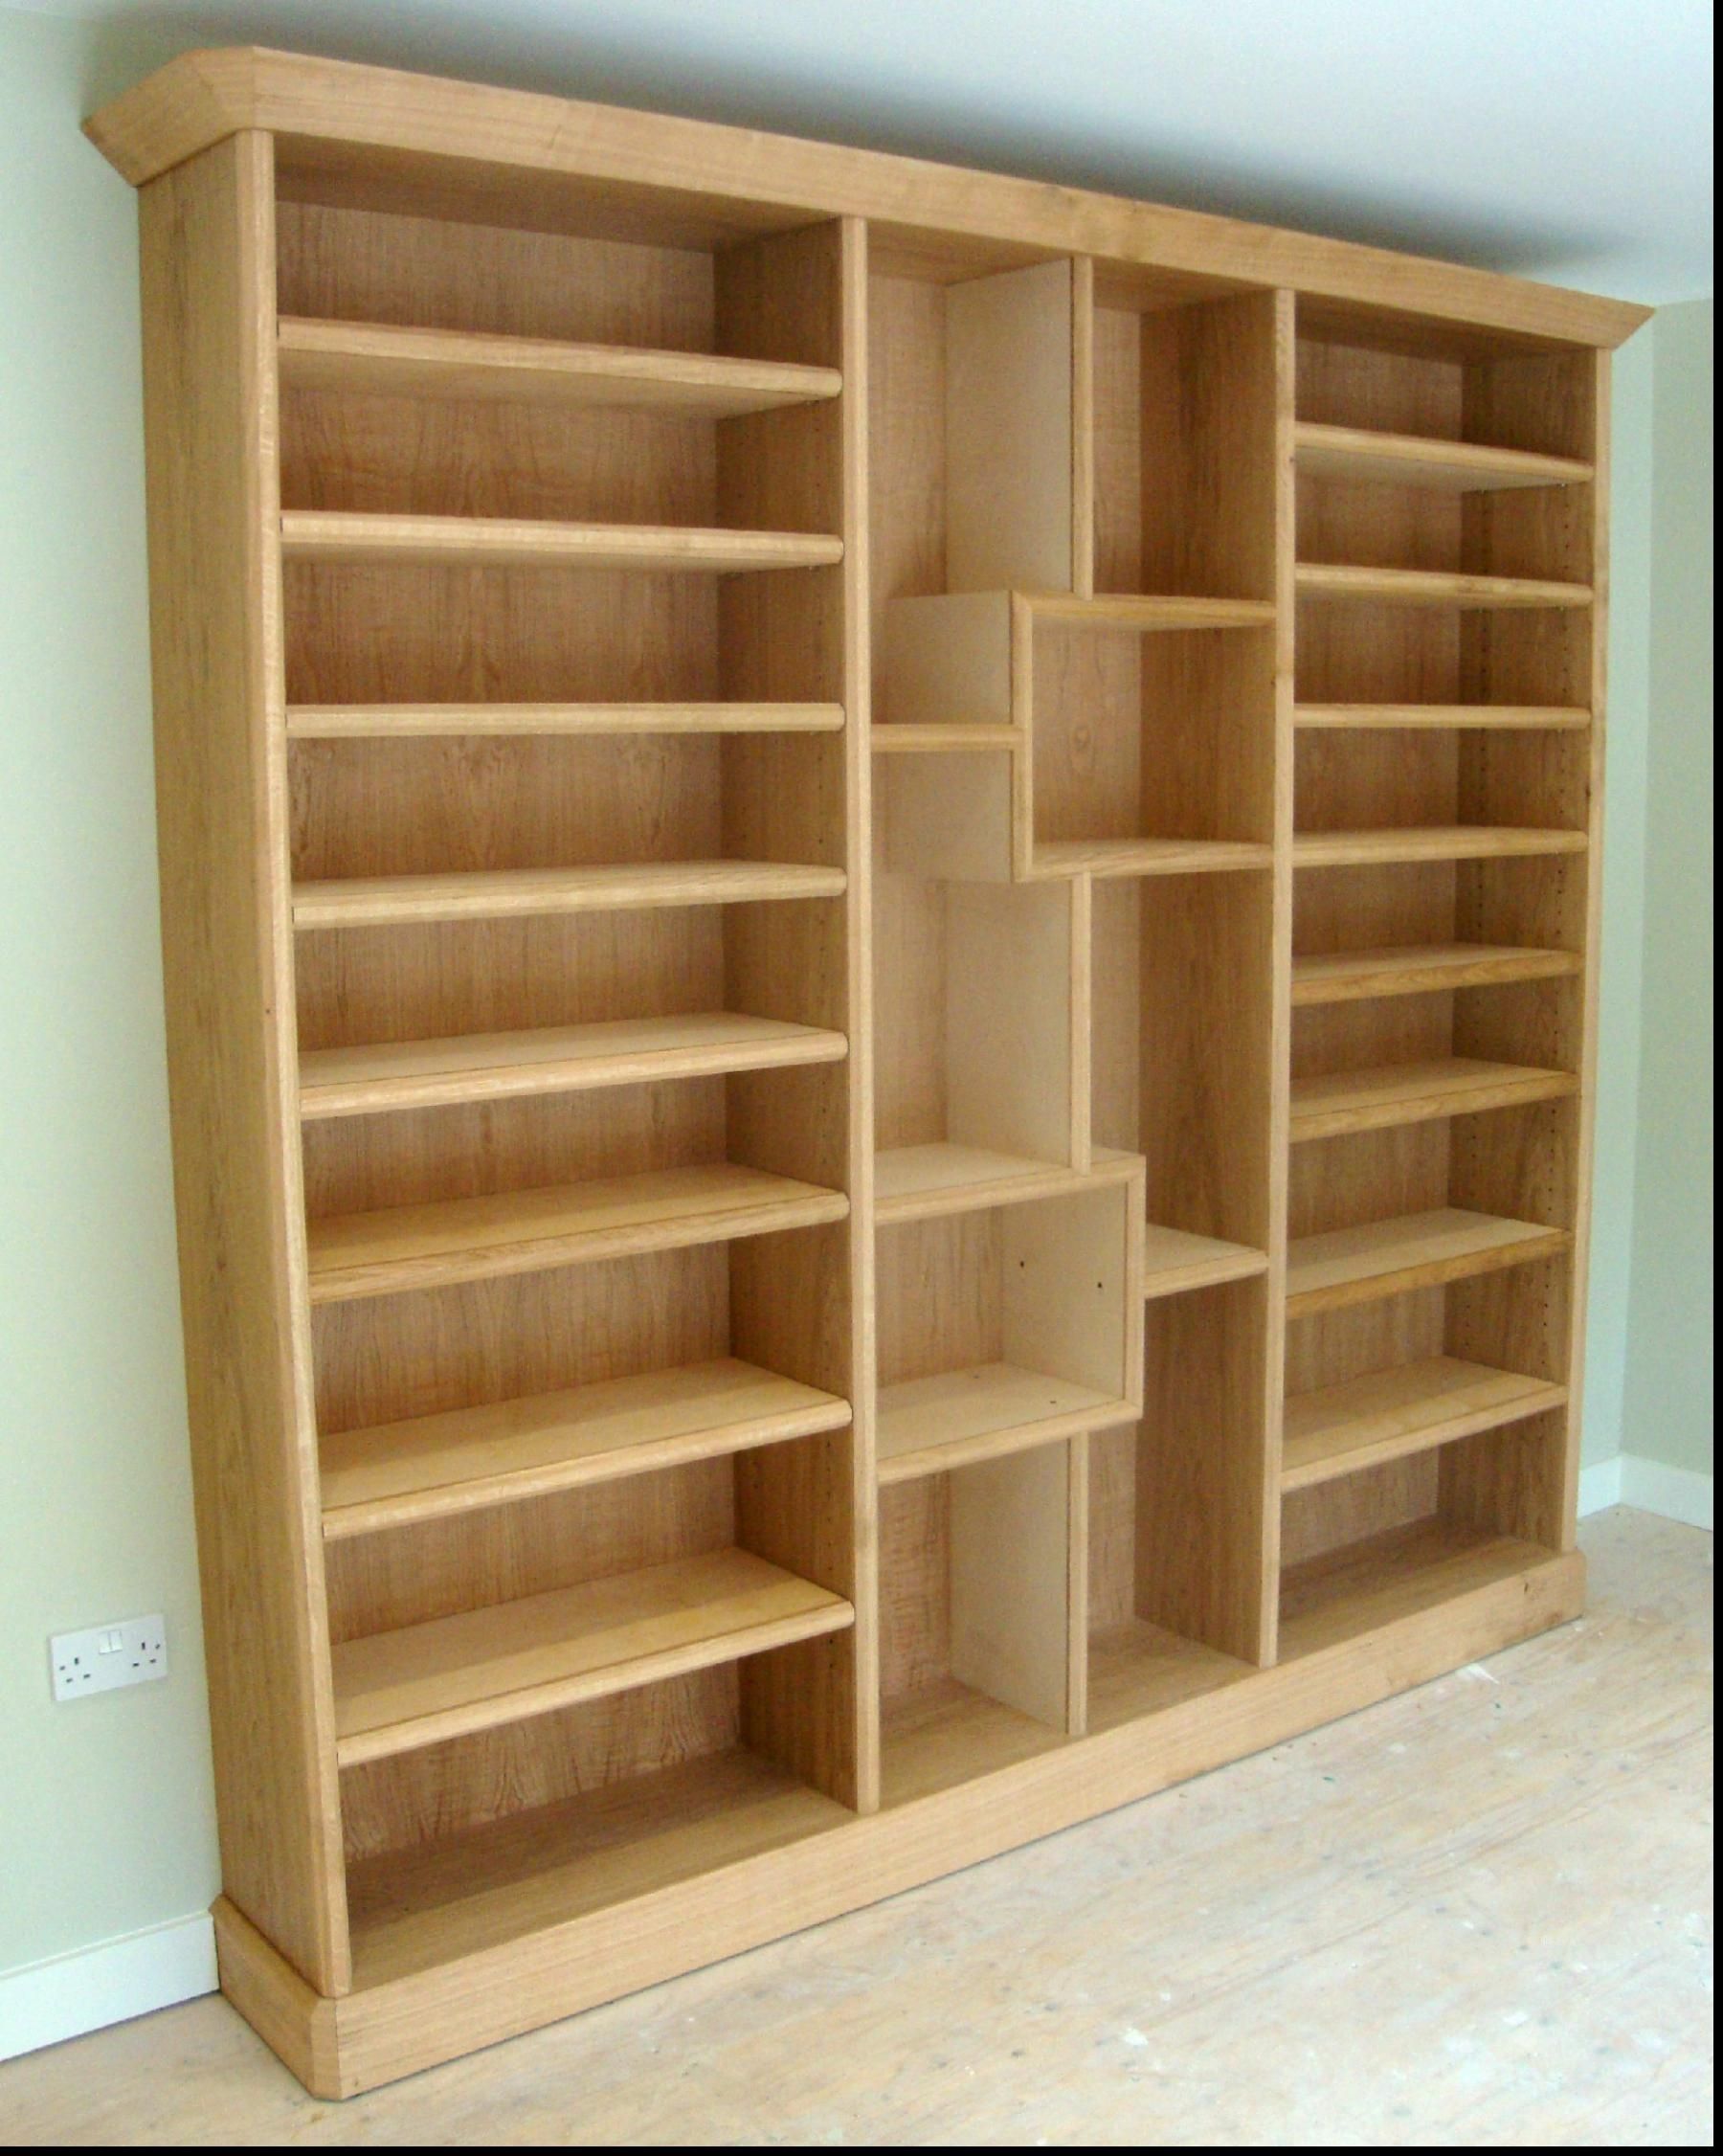 Leaning Bookcase Tall Skinny Bookshelf Ladder Shelves Surripui Inside Oak Bookshelves (View 3 of 15)